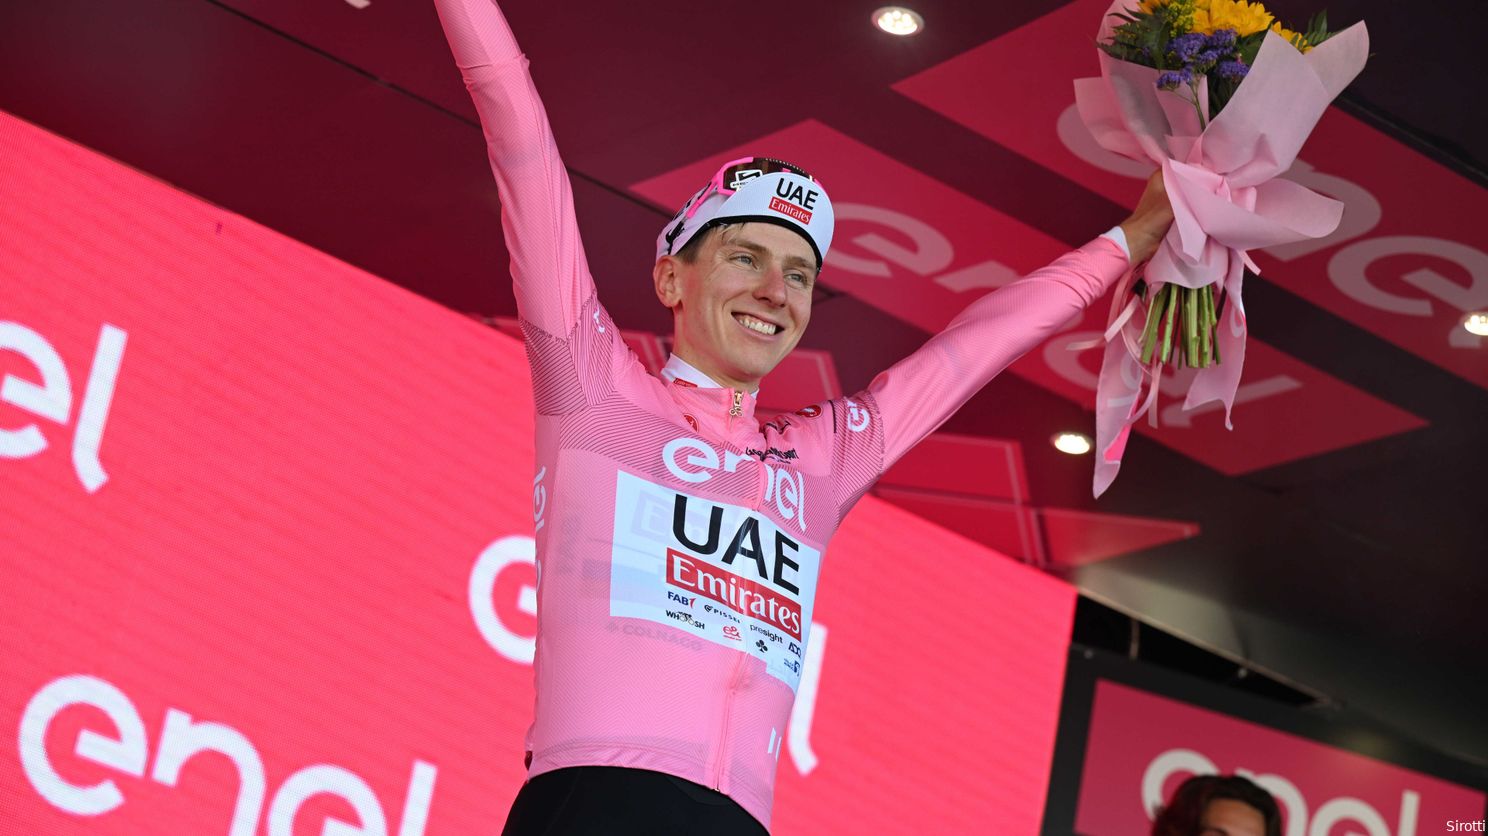 Klimknechten van 'trotse' Pogacar klaar om Giro in monsterlijke rit te vernietigen: 'Jullie zullen zien...'